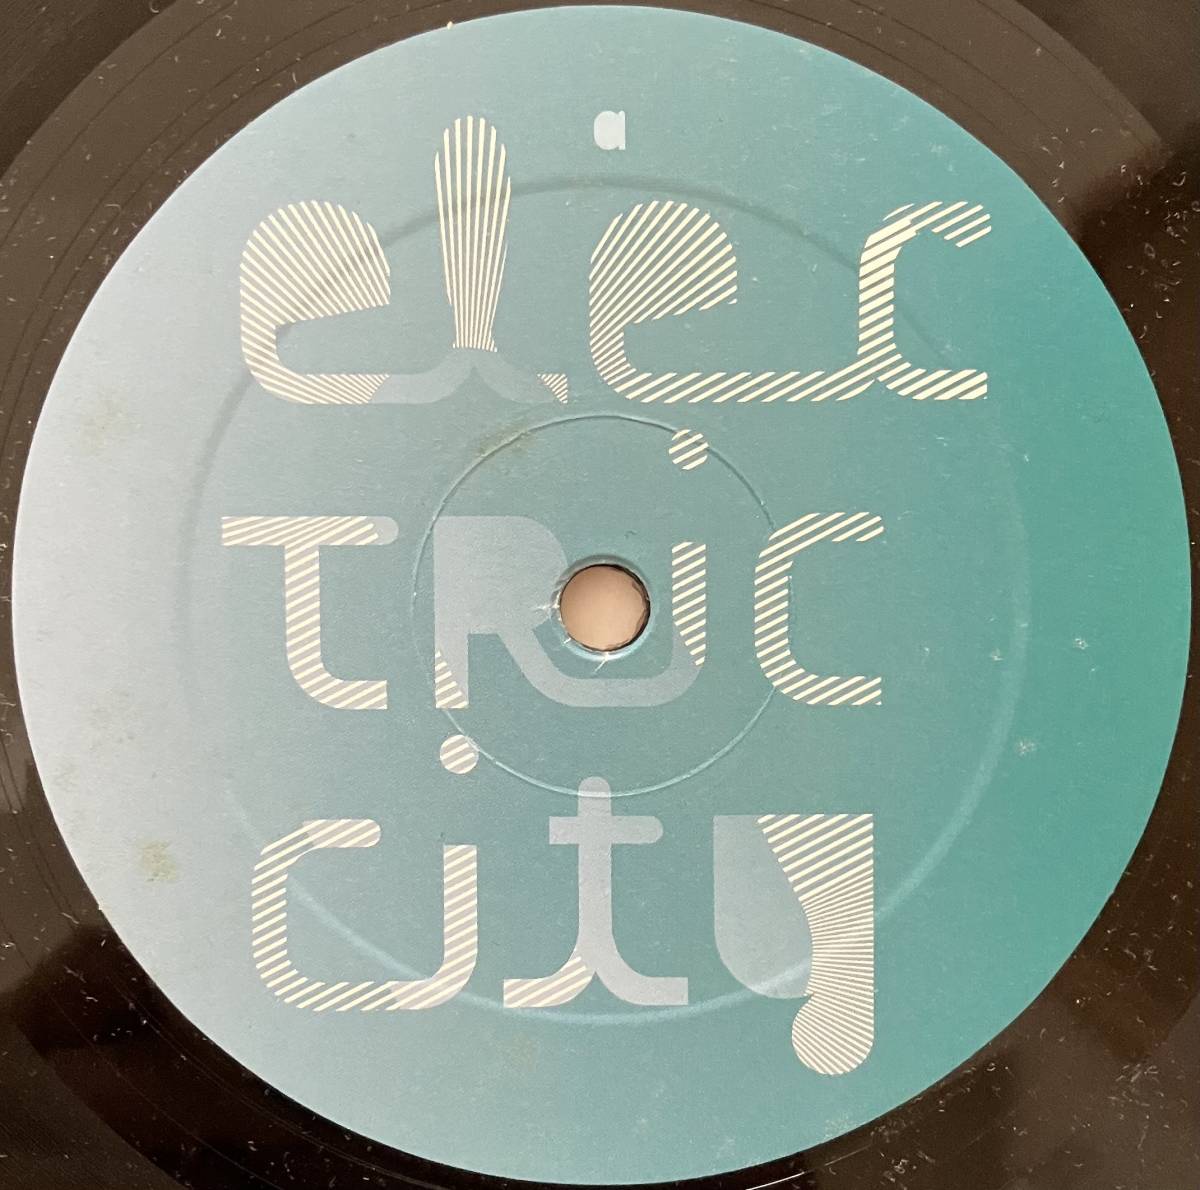 [ 12 / レコード ] Terence Fixmer / Electric City ( Techno / Industrial ) Electric Deluxe Function Remix テクノ インダストリアル_画像3